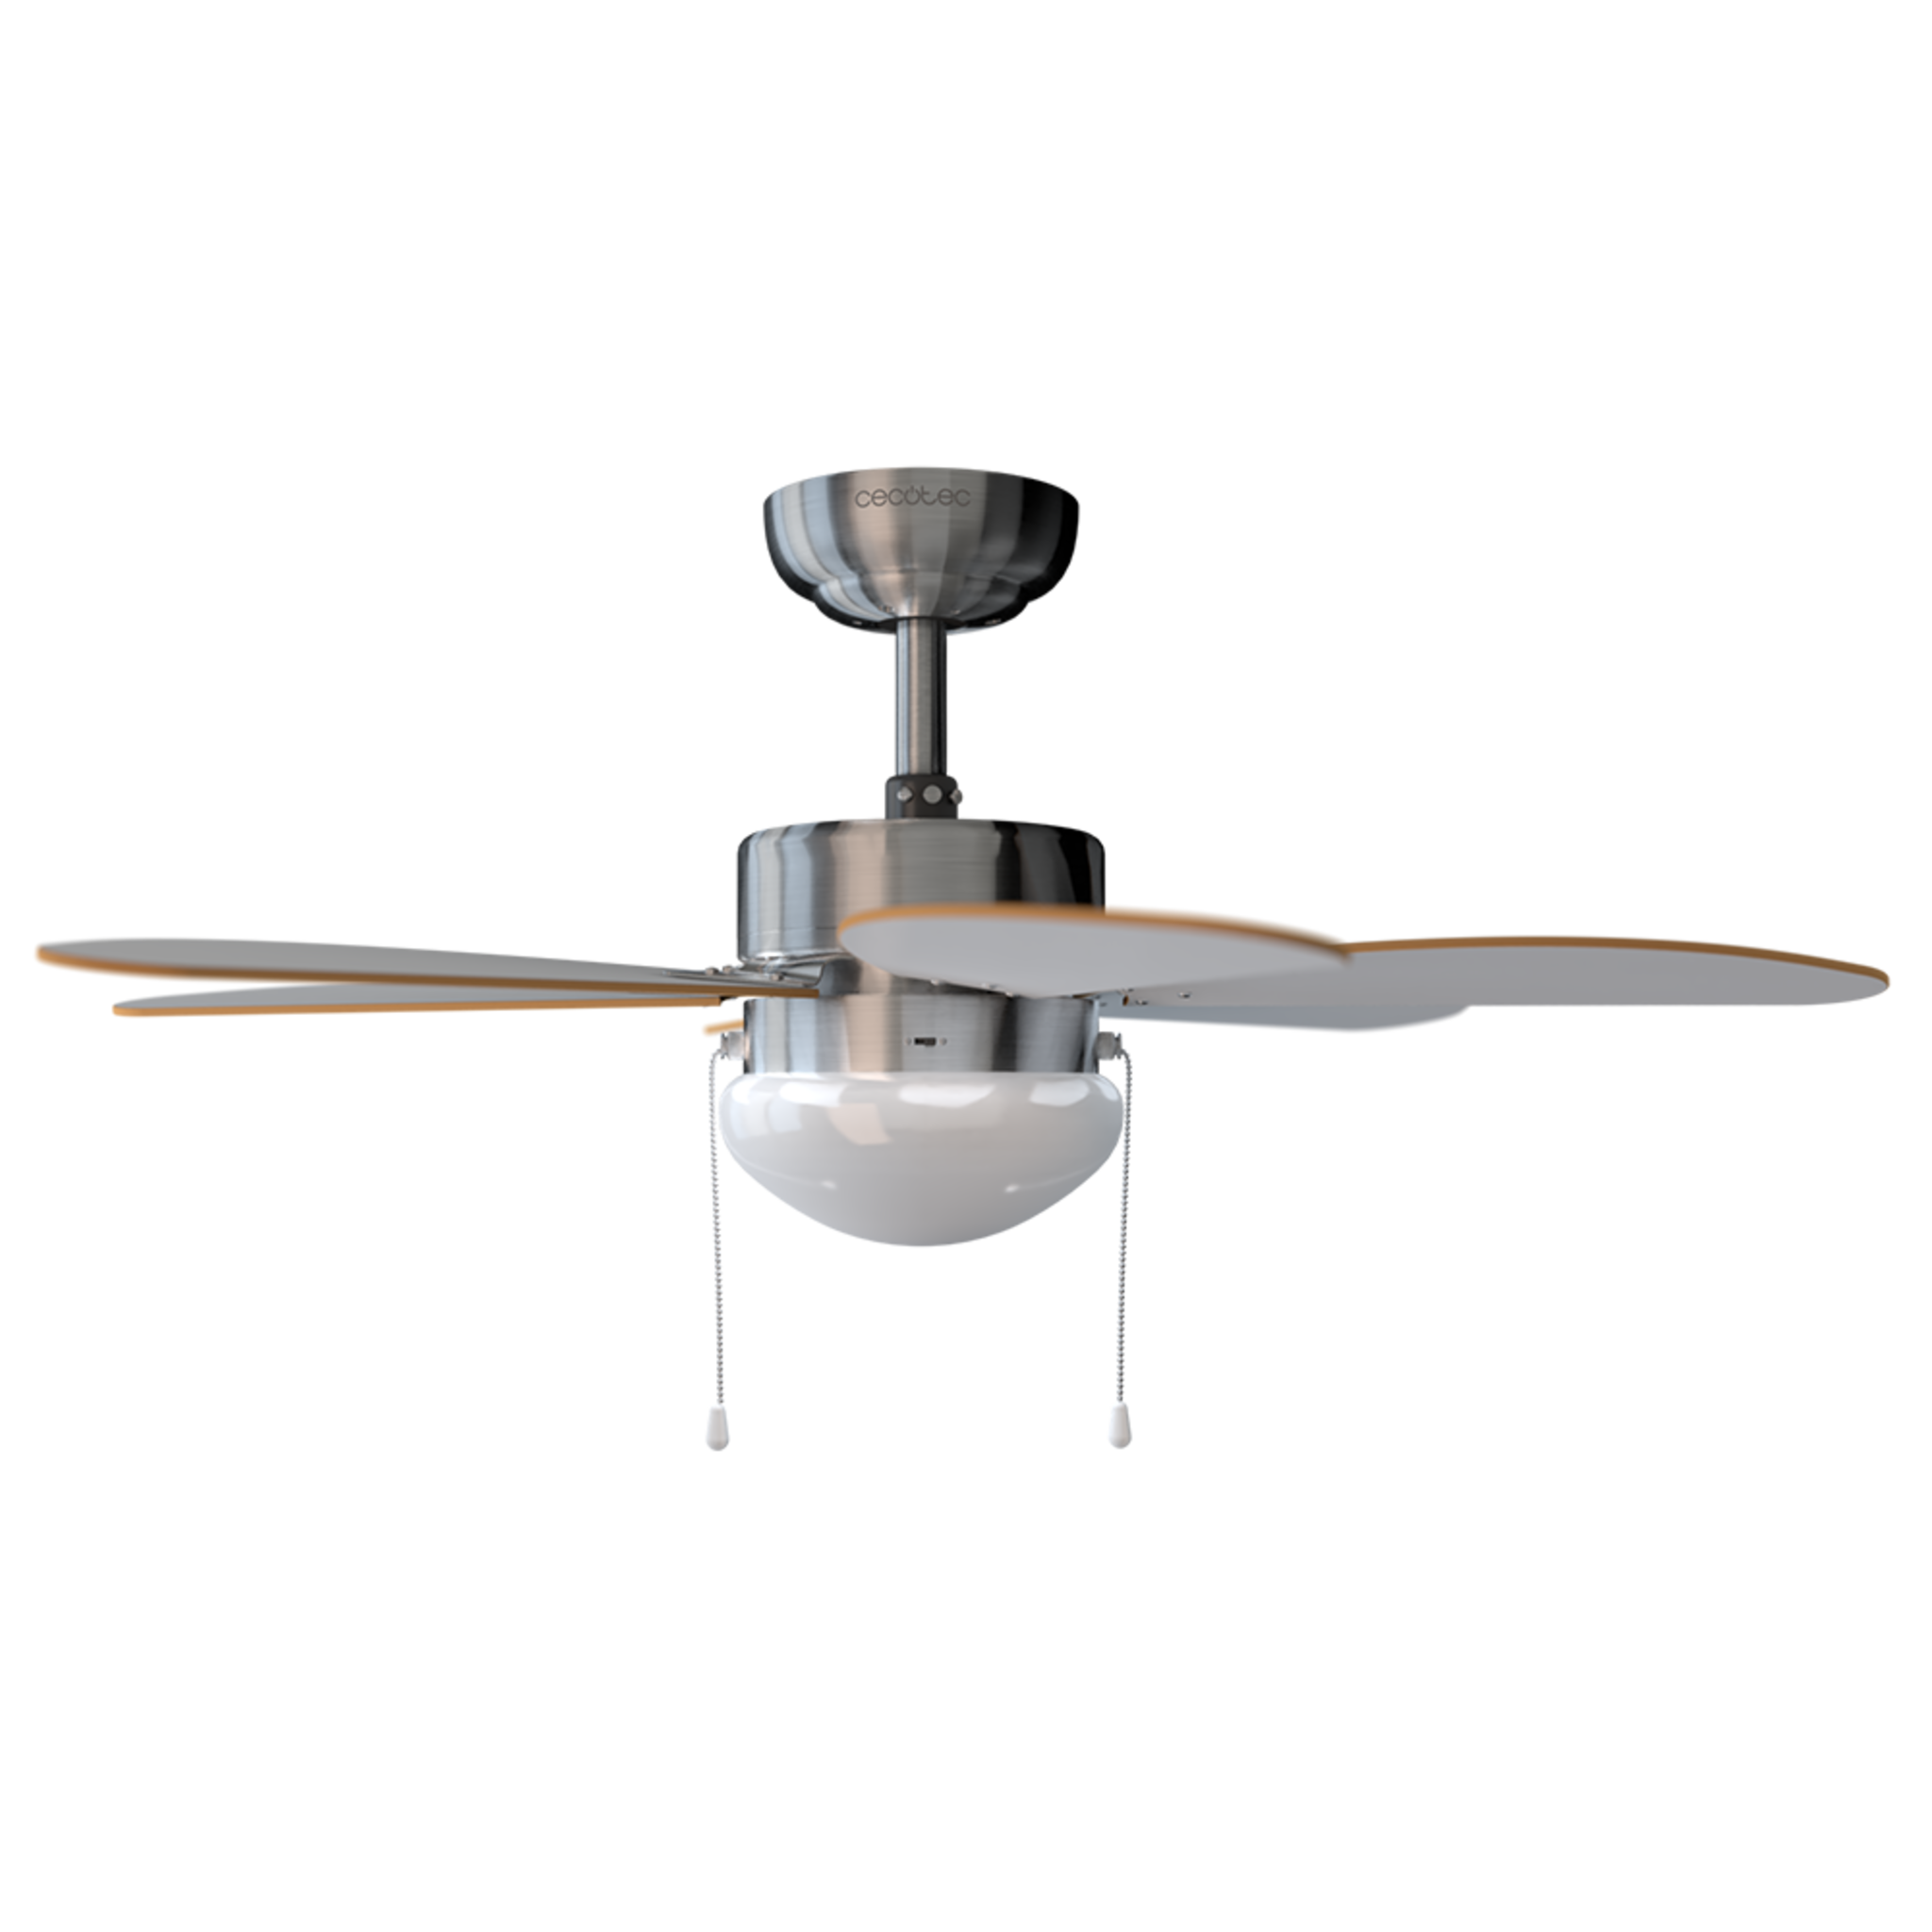 Ventilador de Techo con Luz EnergySilence Aero 350. 50 W, Bajo consumo, 81 cm de Diámetro, 6 Aspas Reversibles, 3 Velocidades, Función Invierno, Acabado en blanco/madera